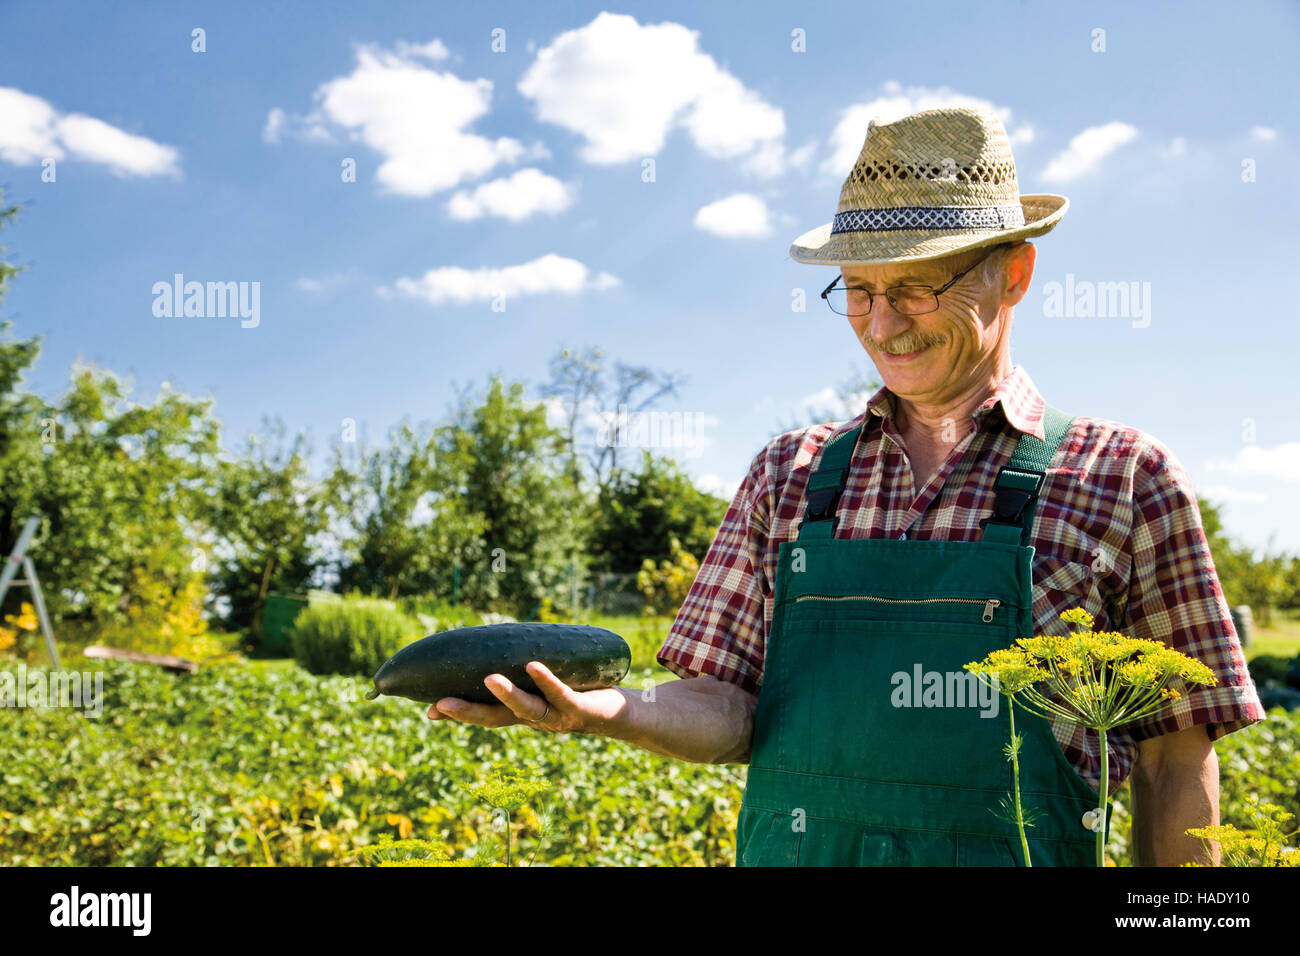 Orgulloso jardinero cosechando vegetales, sosteniendo un pepino en sus manos Foto de stock